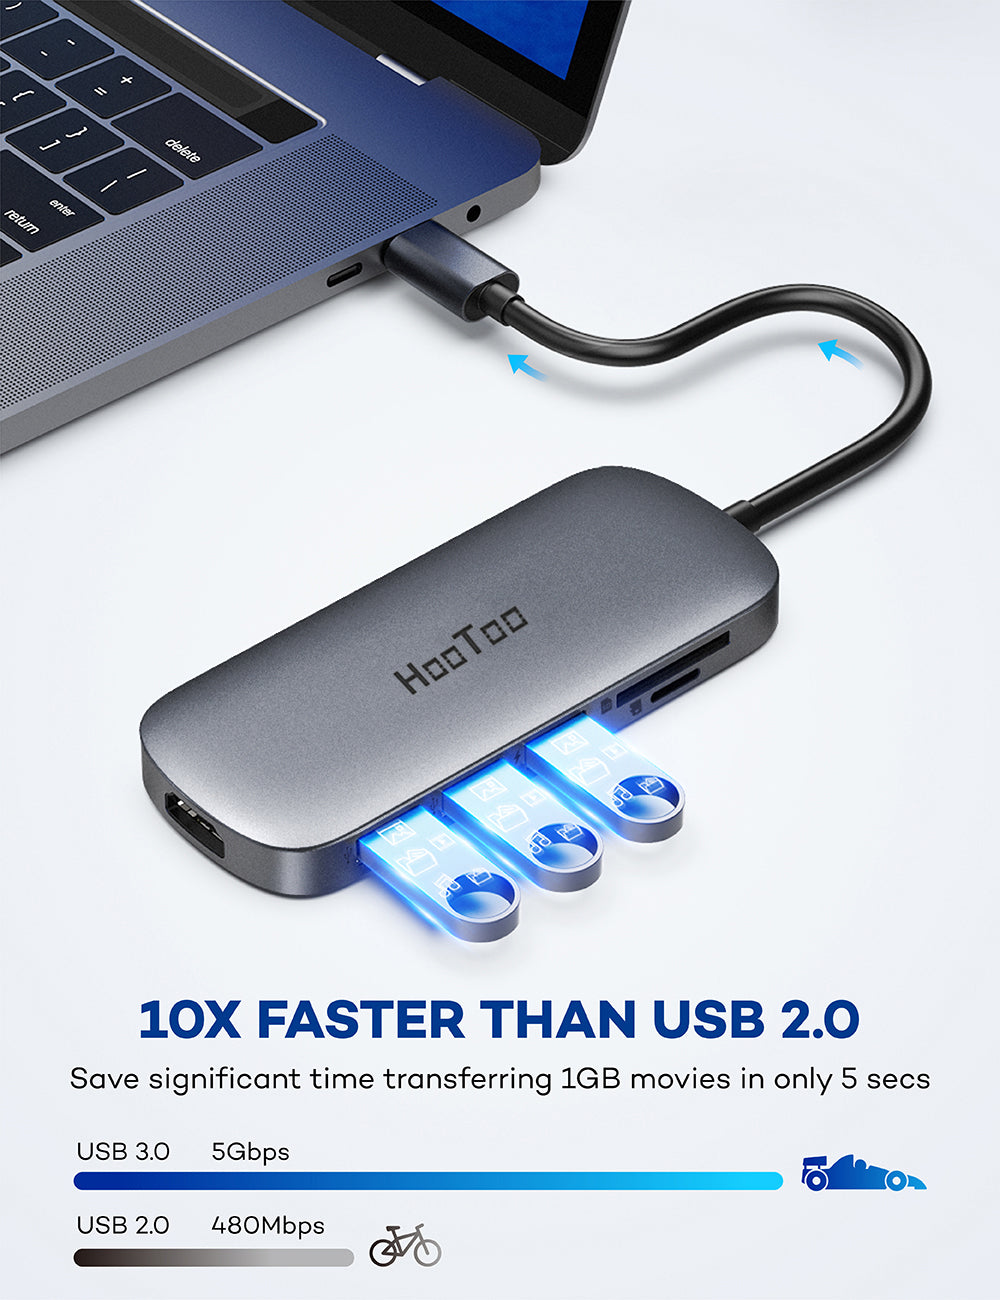 HooToo USB C Hub 7 in 1